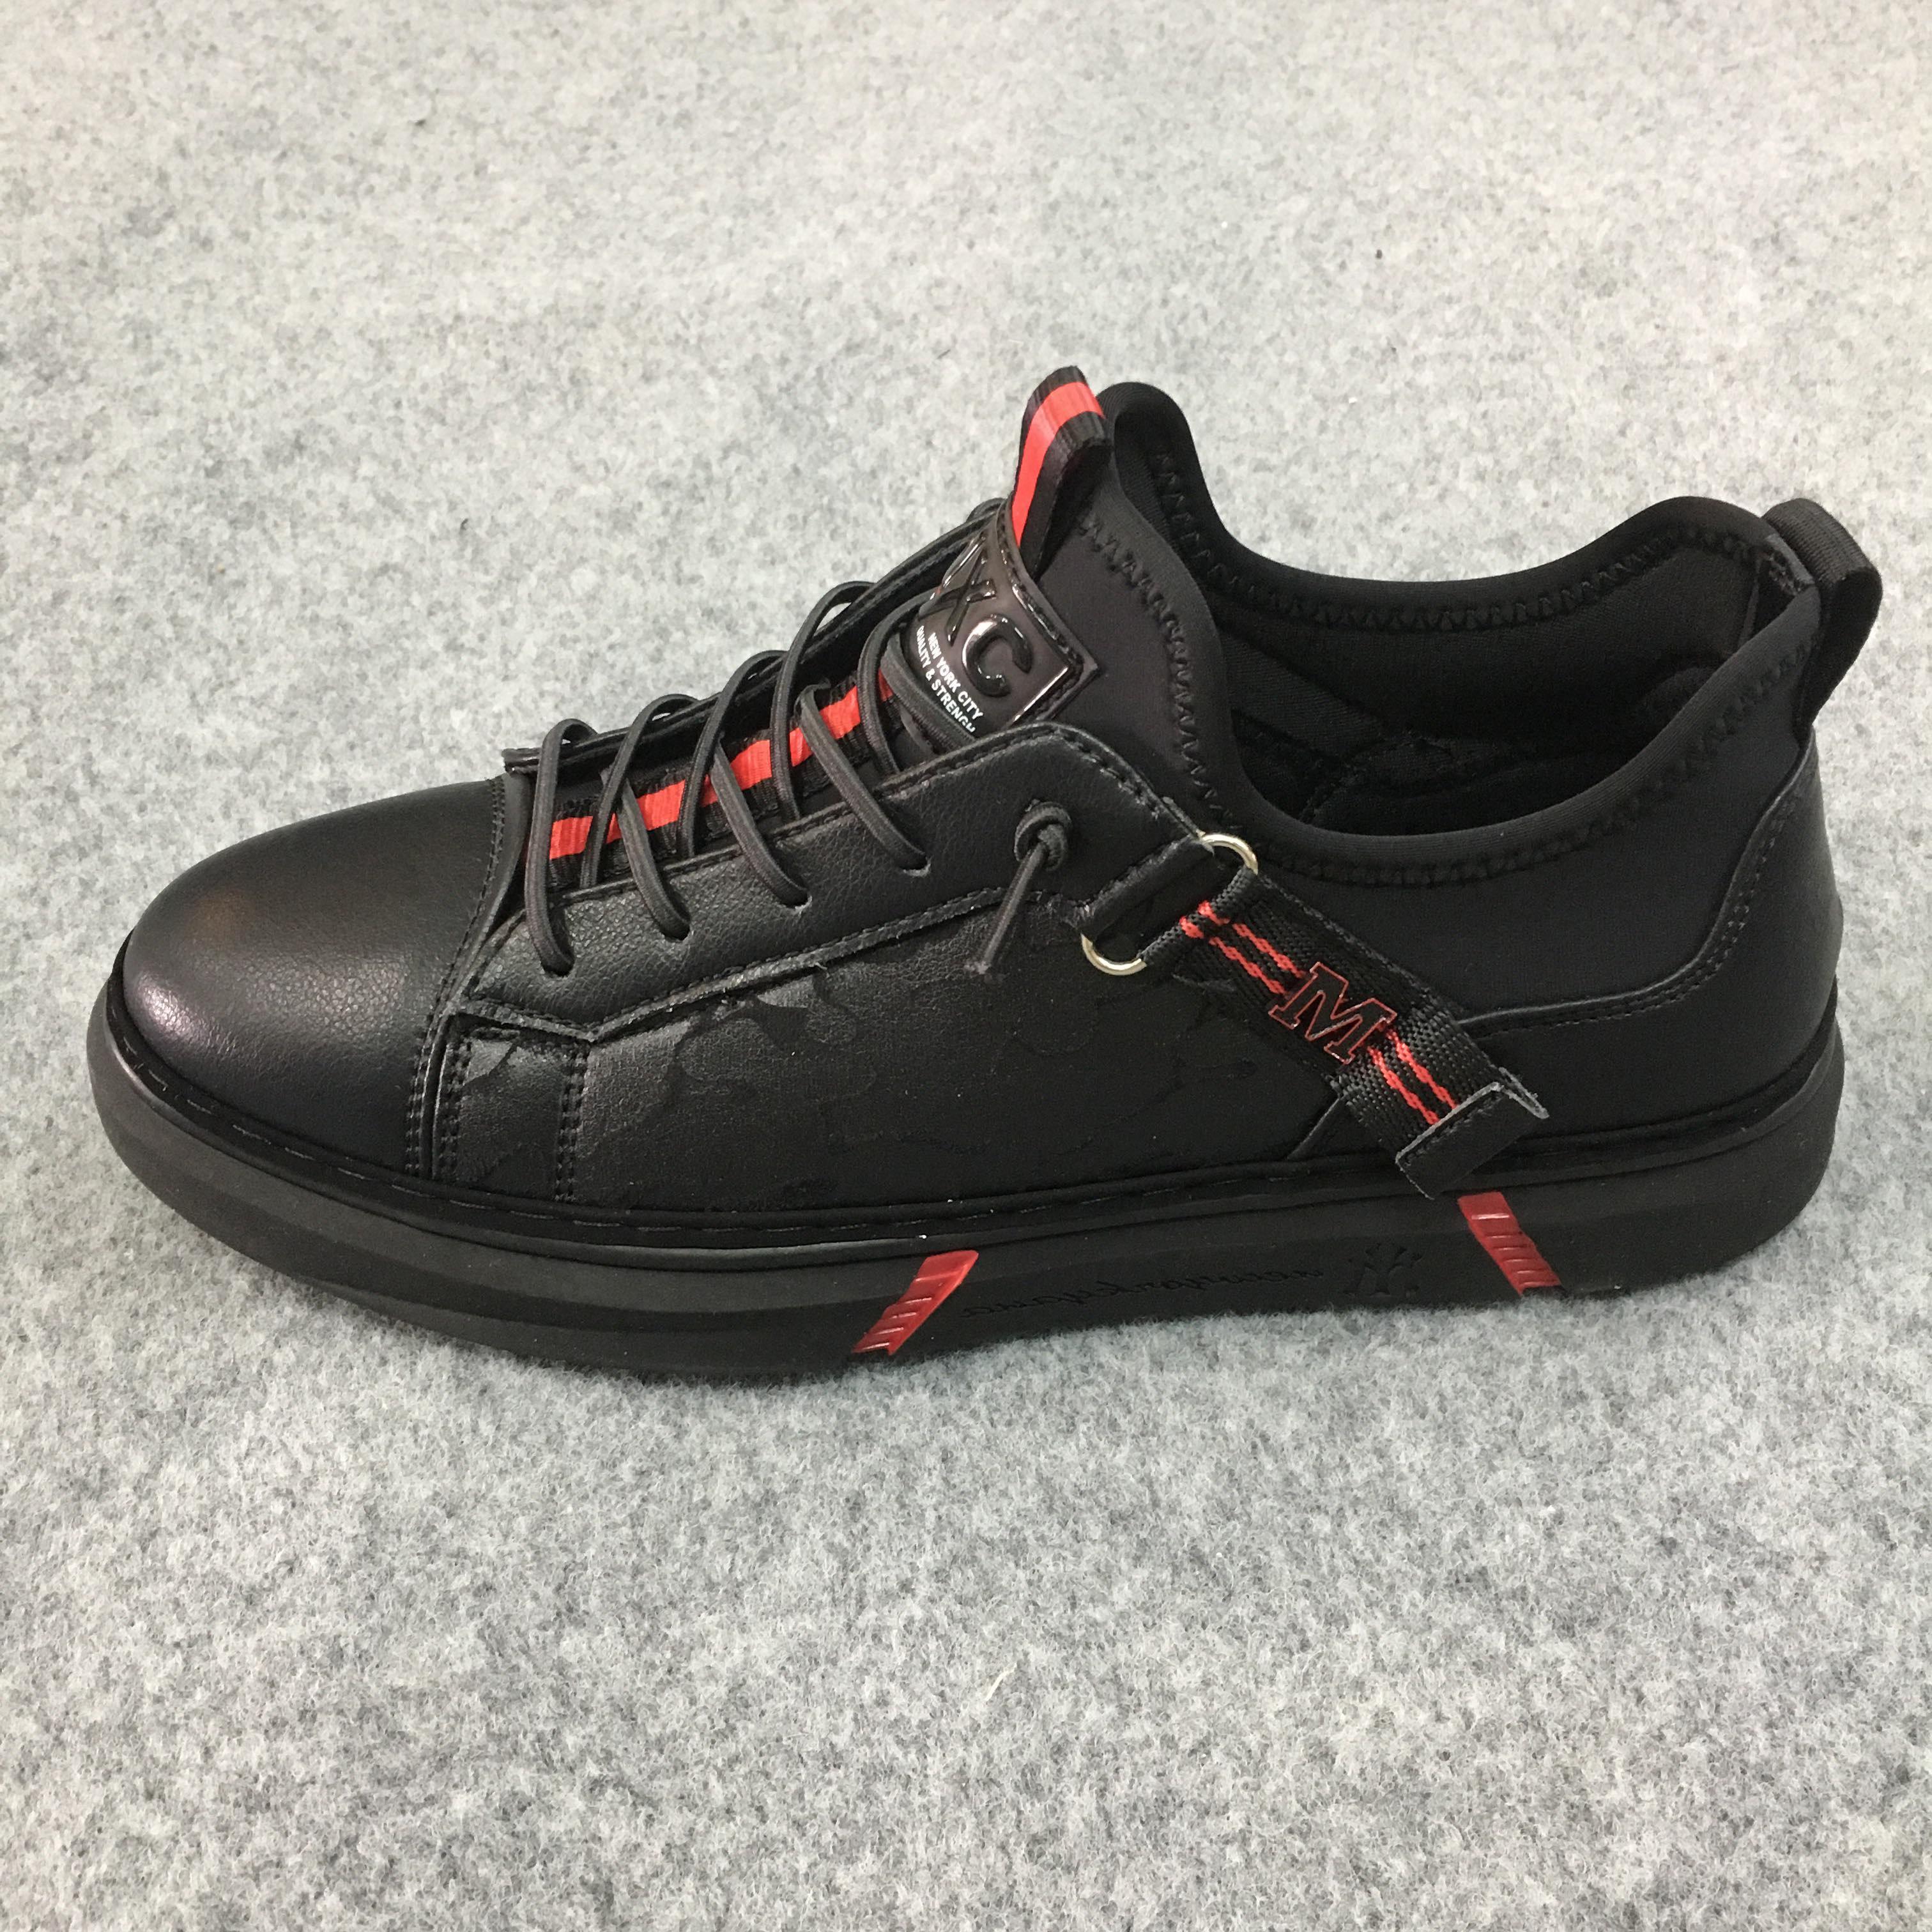 Giày sneakers nam NXC 9252 đen đỏ